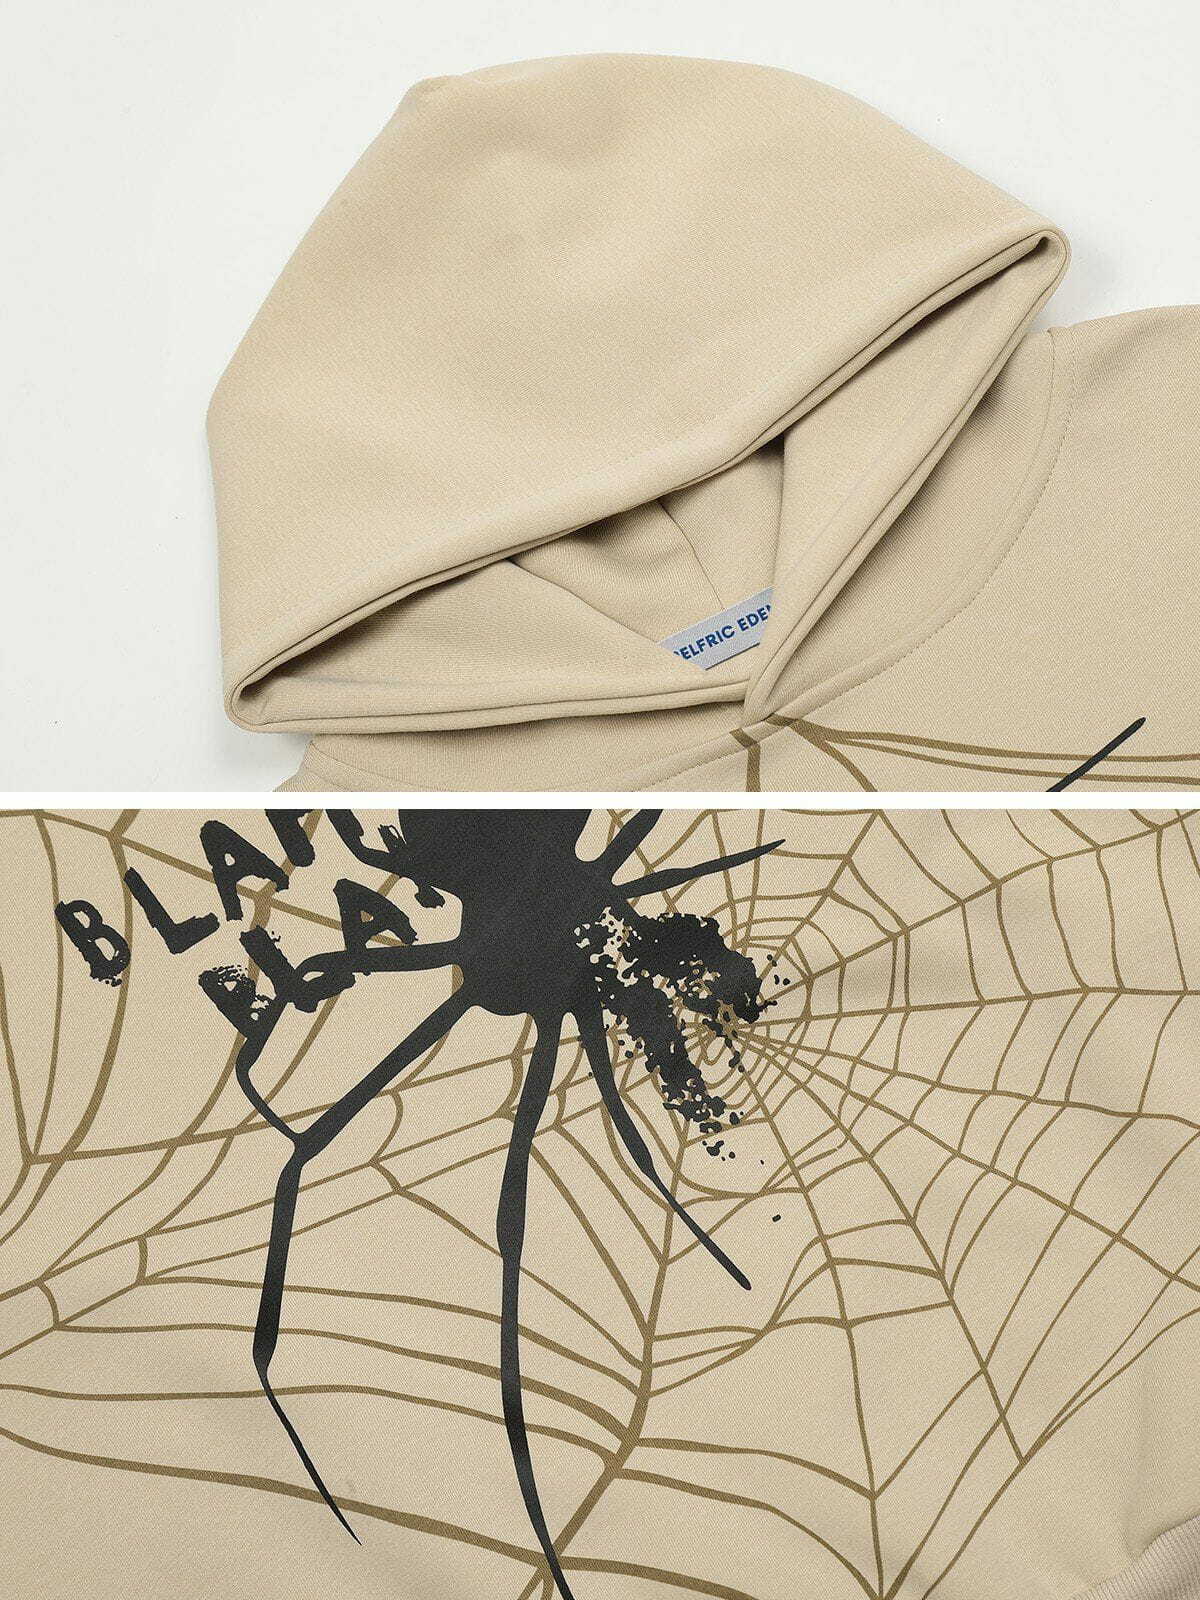 spider shadow hoodie edgy & urban streetwear 3312